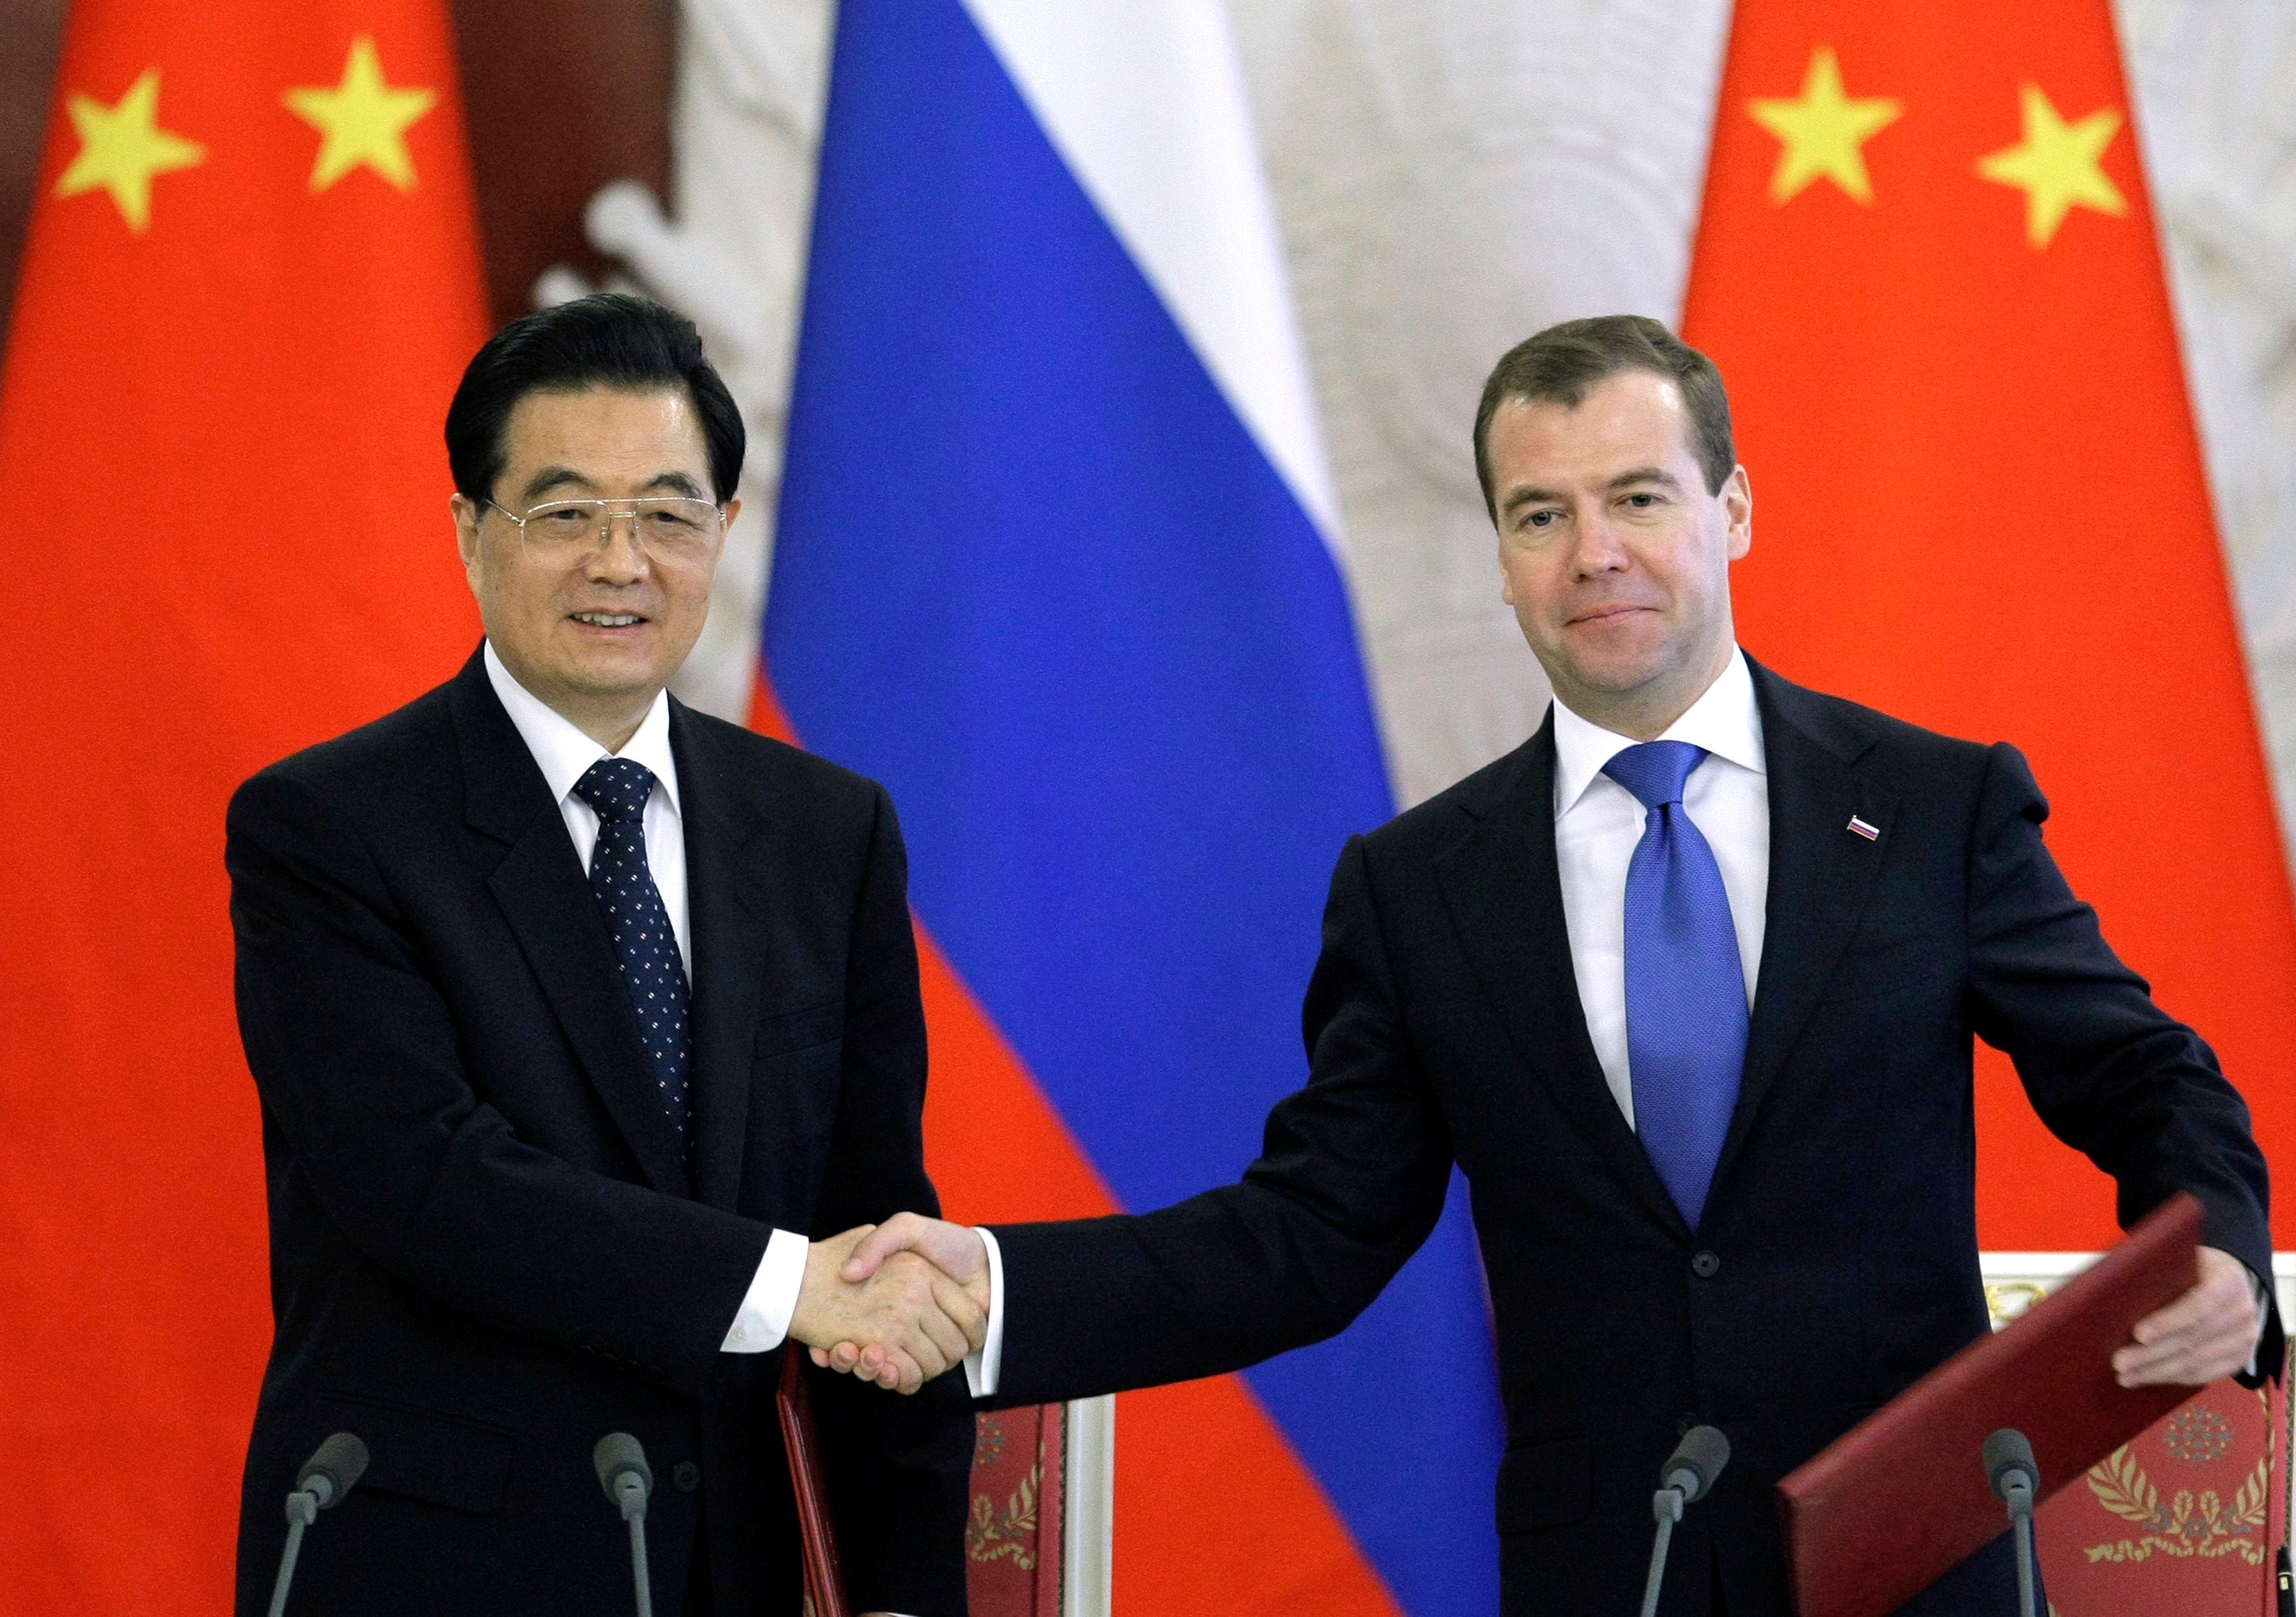 Glada miner när Kinas president Hu Jintao och hans ryske motsvarighet Dmitri Medvedev skakar hand.